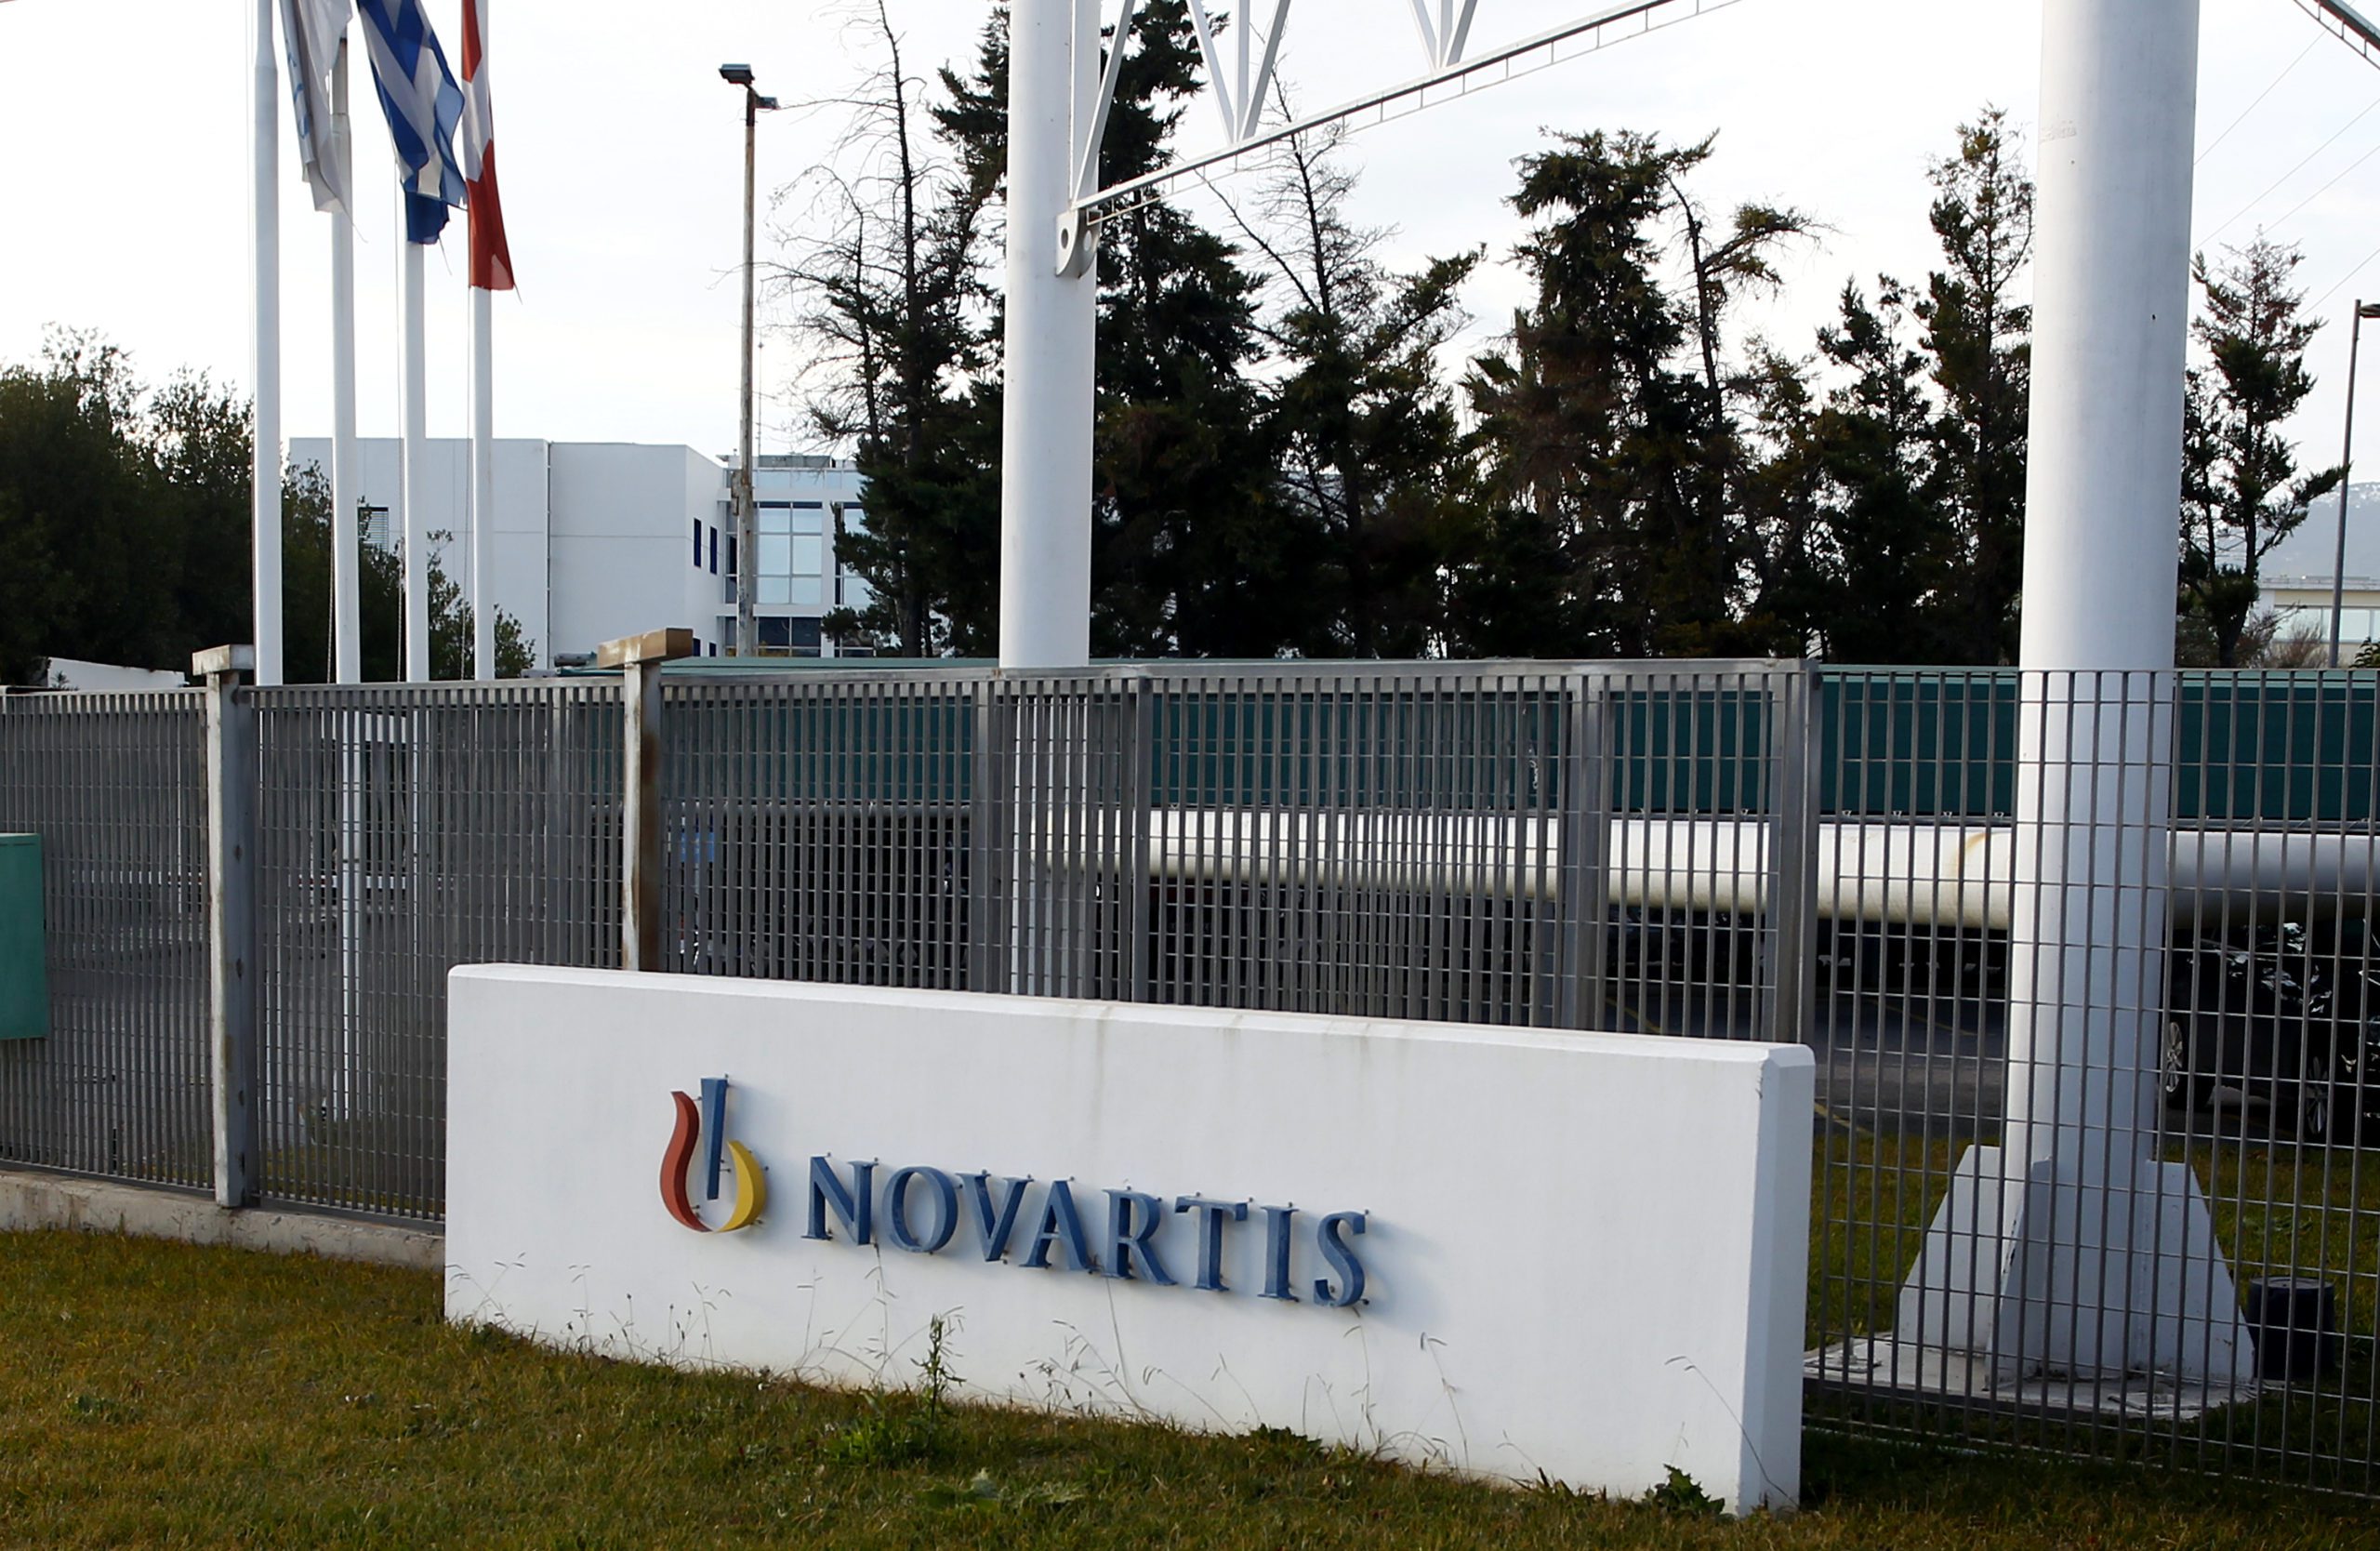 Σε απολογία για την υπόθεση Novartis κλήθηκαν Βαξεβάνης, Τάρκας και Παπαδάκου